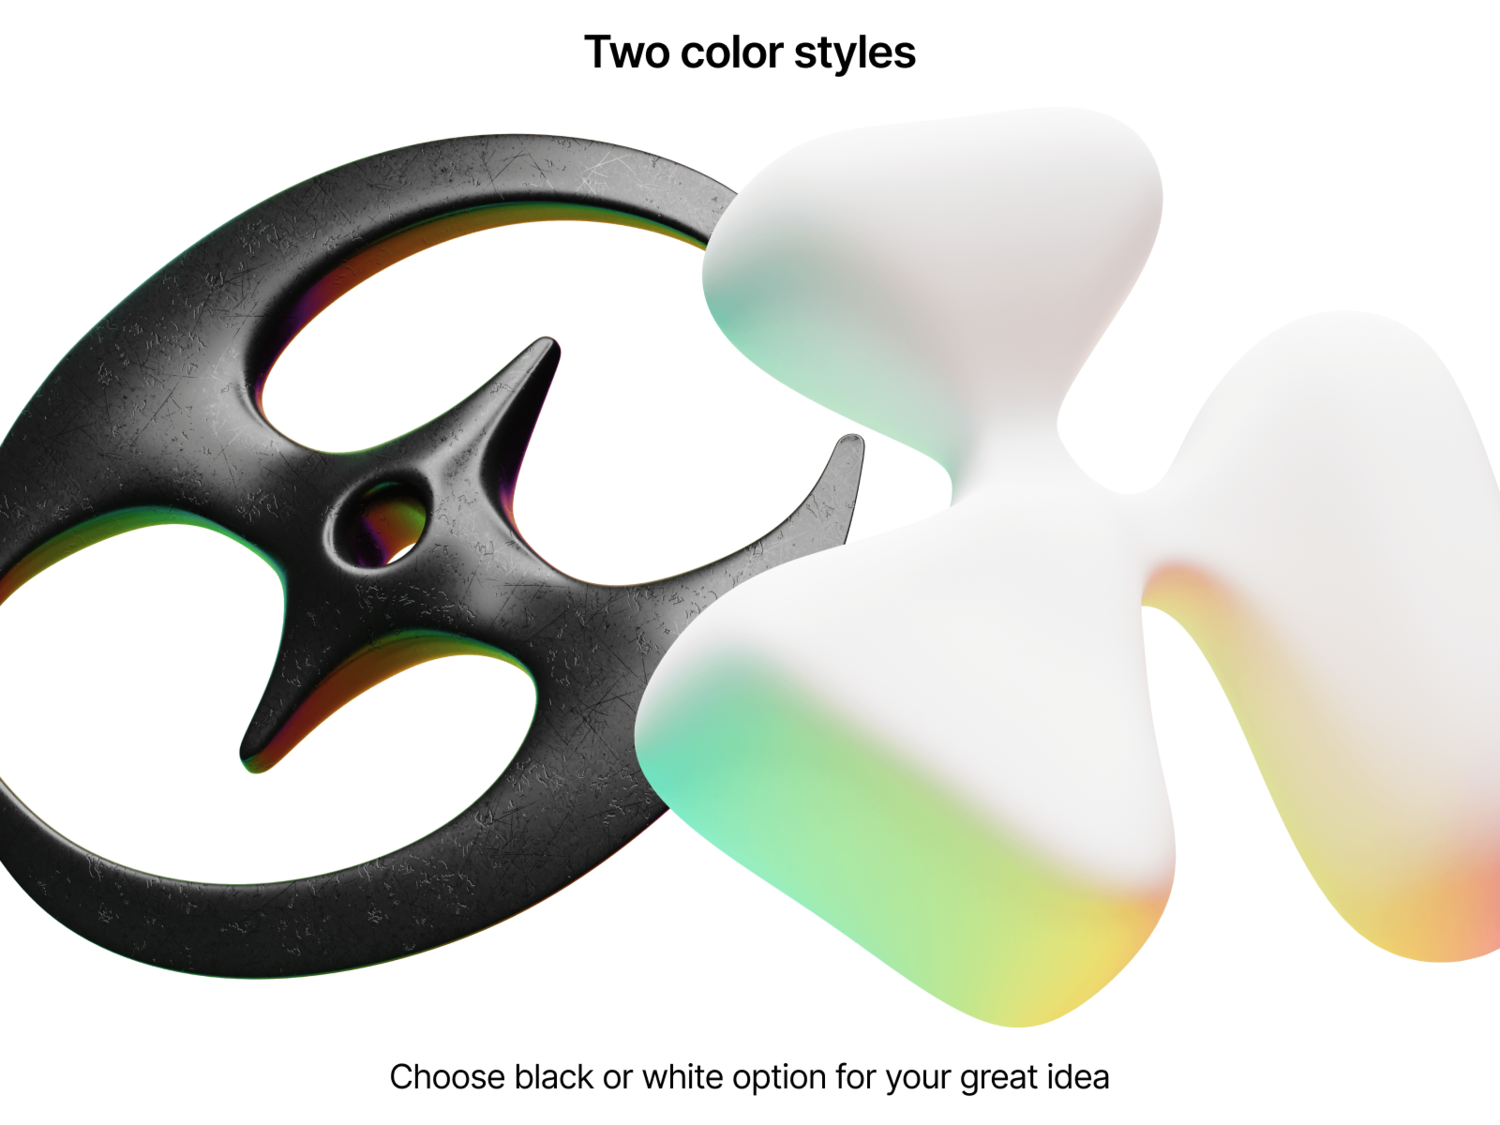 4377 重金属风Y2K主题抽象图形元素3D Blender模型素材包 3D Y2K Icons@GOOODME.COM